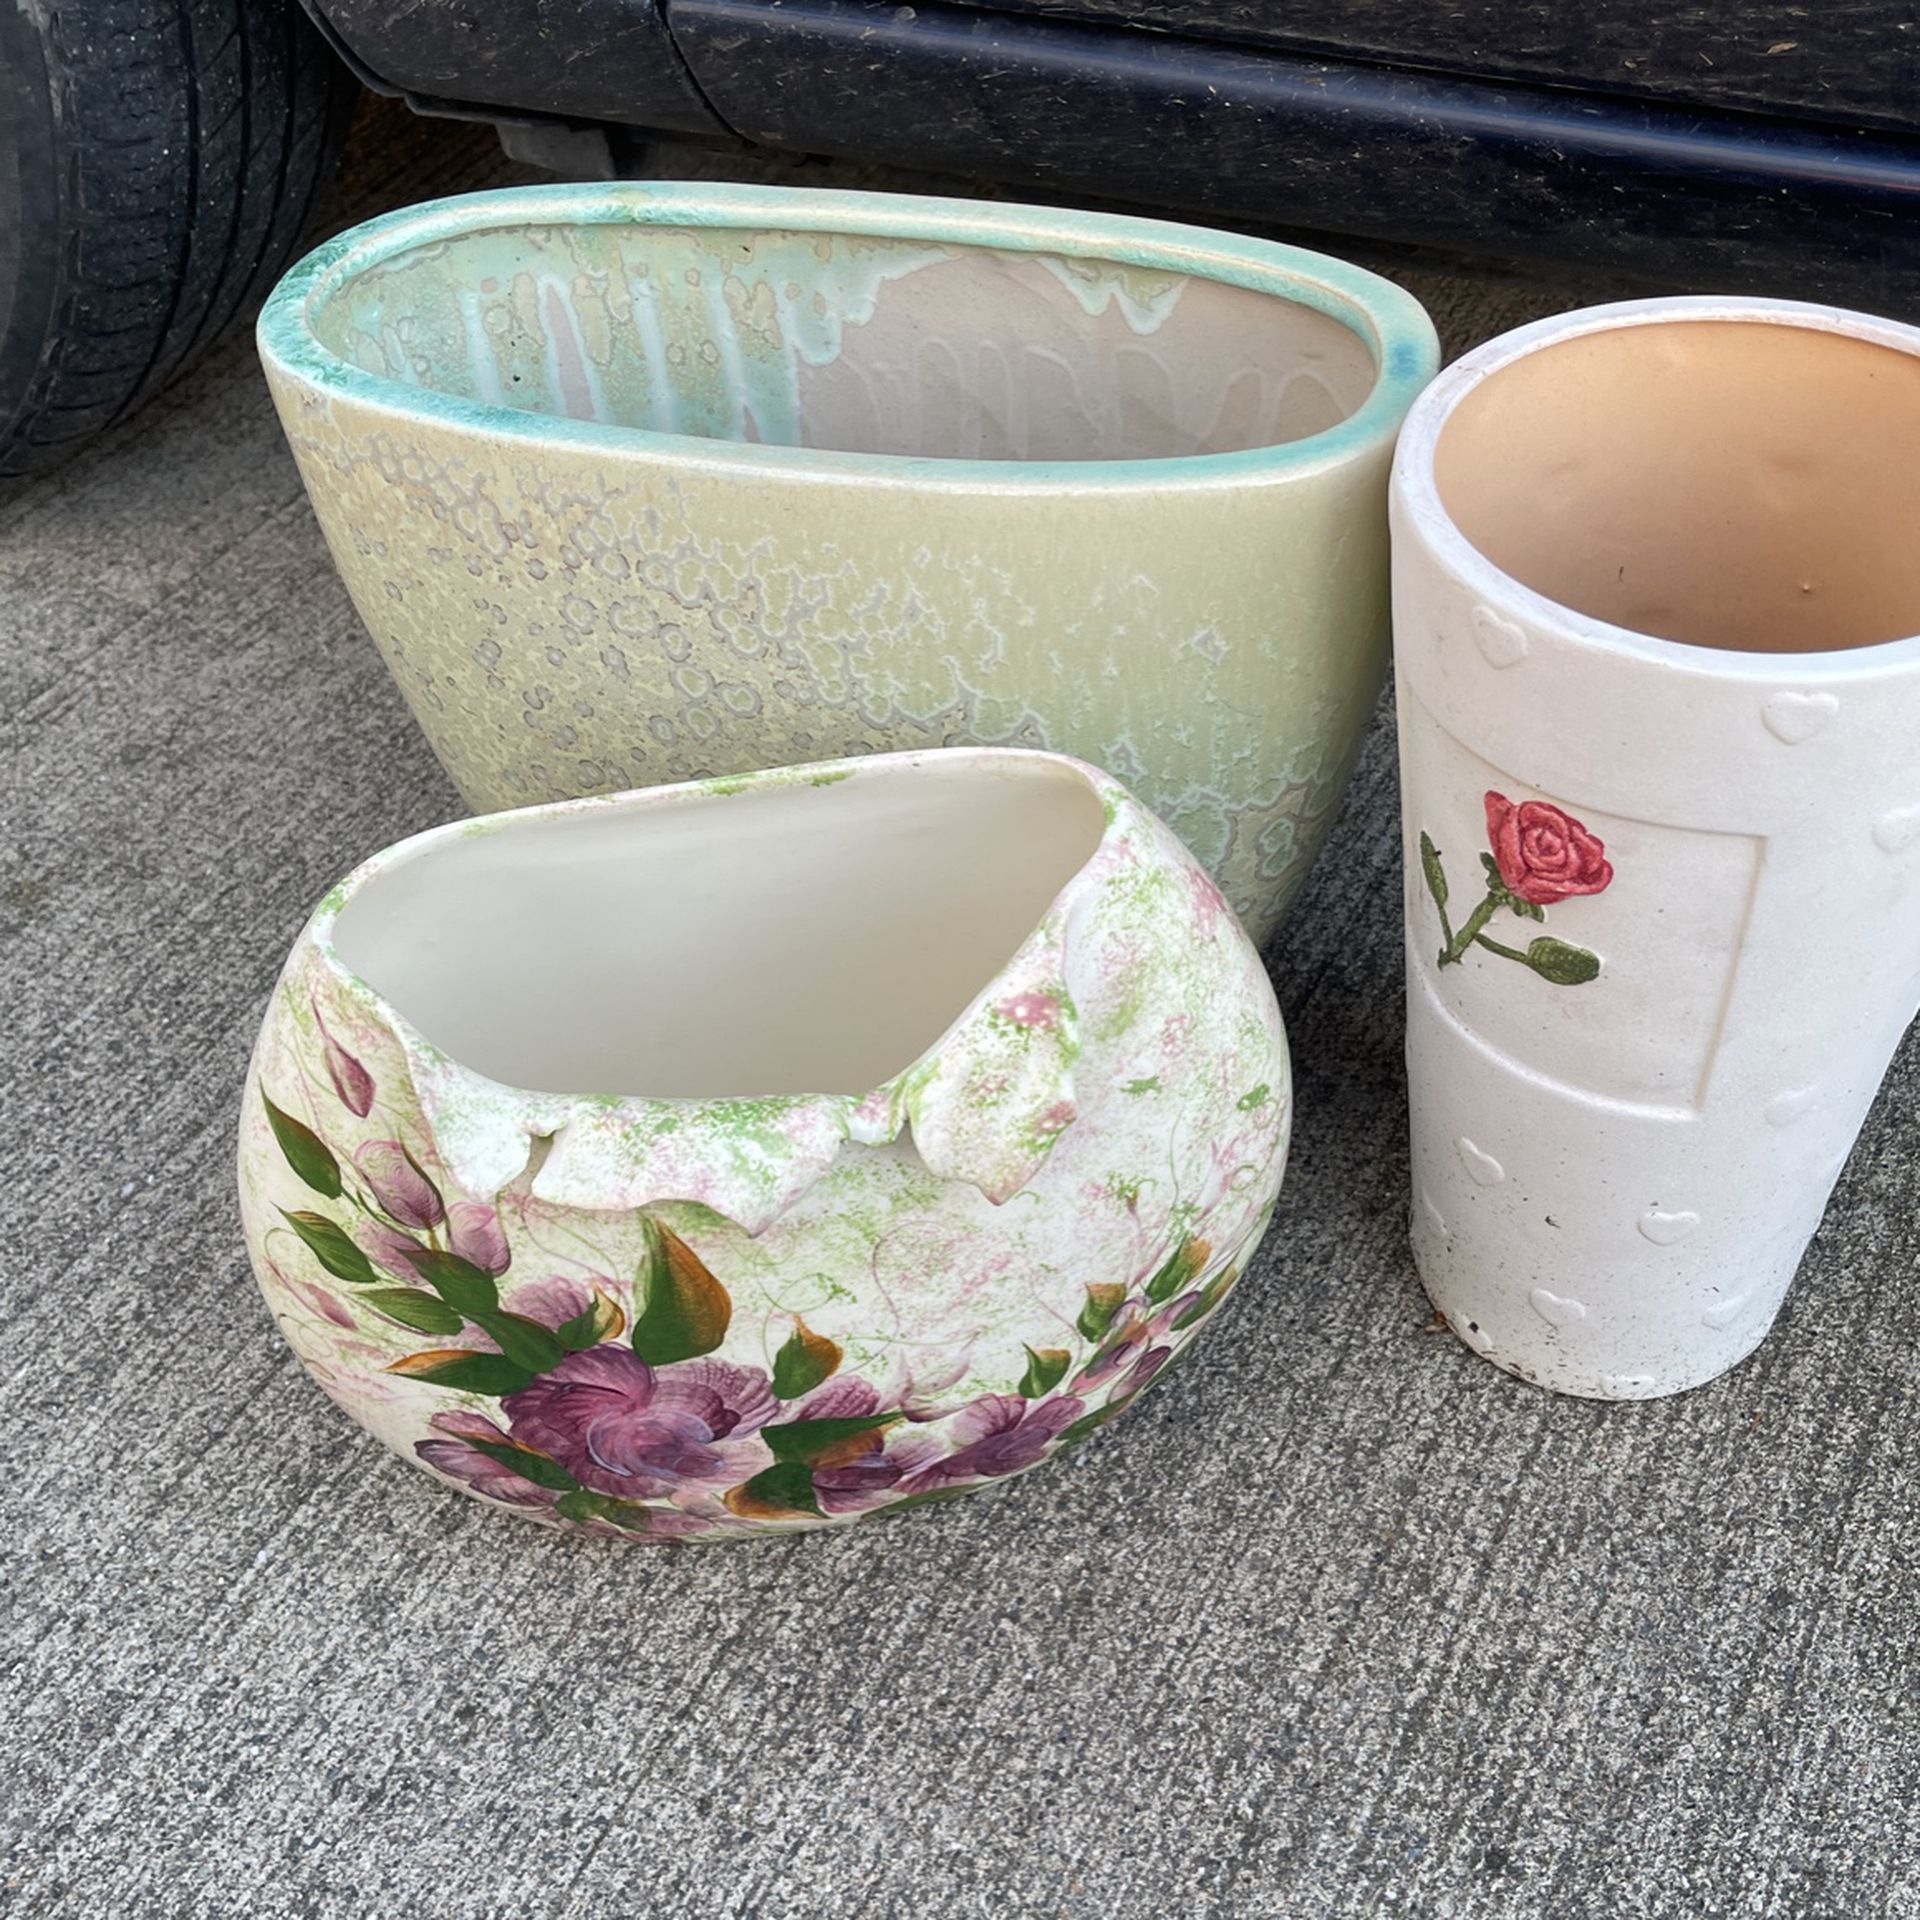 3 Beautiful Flowers 💐 Ceramic Vases 